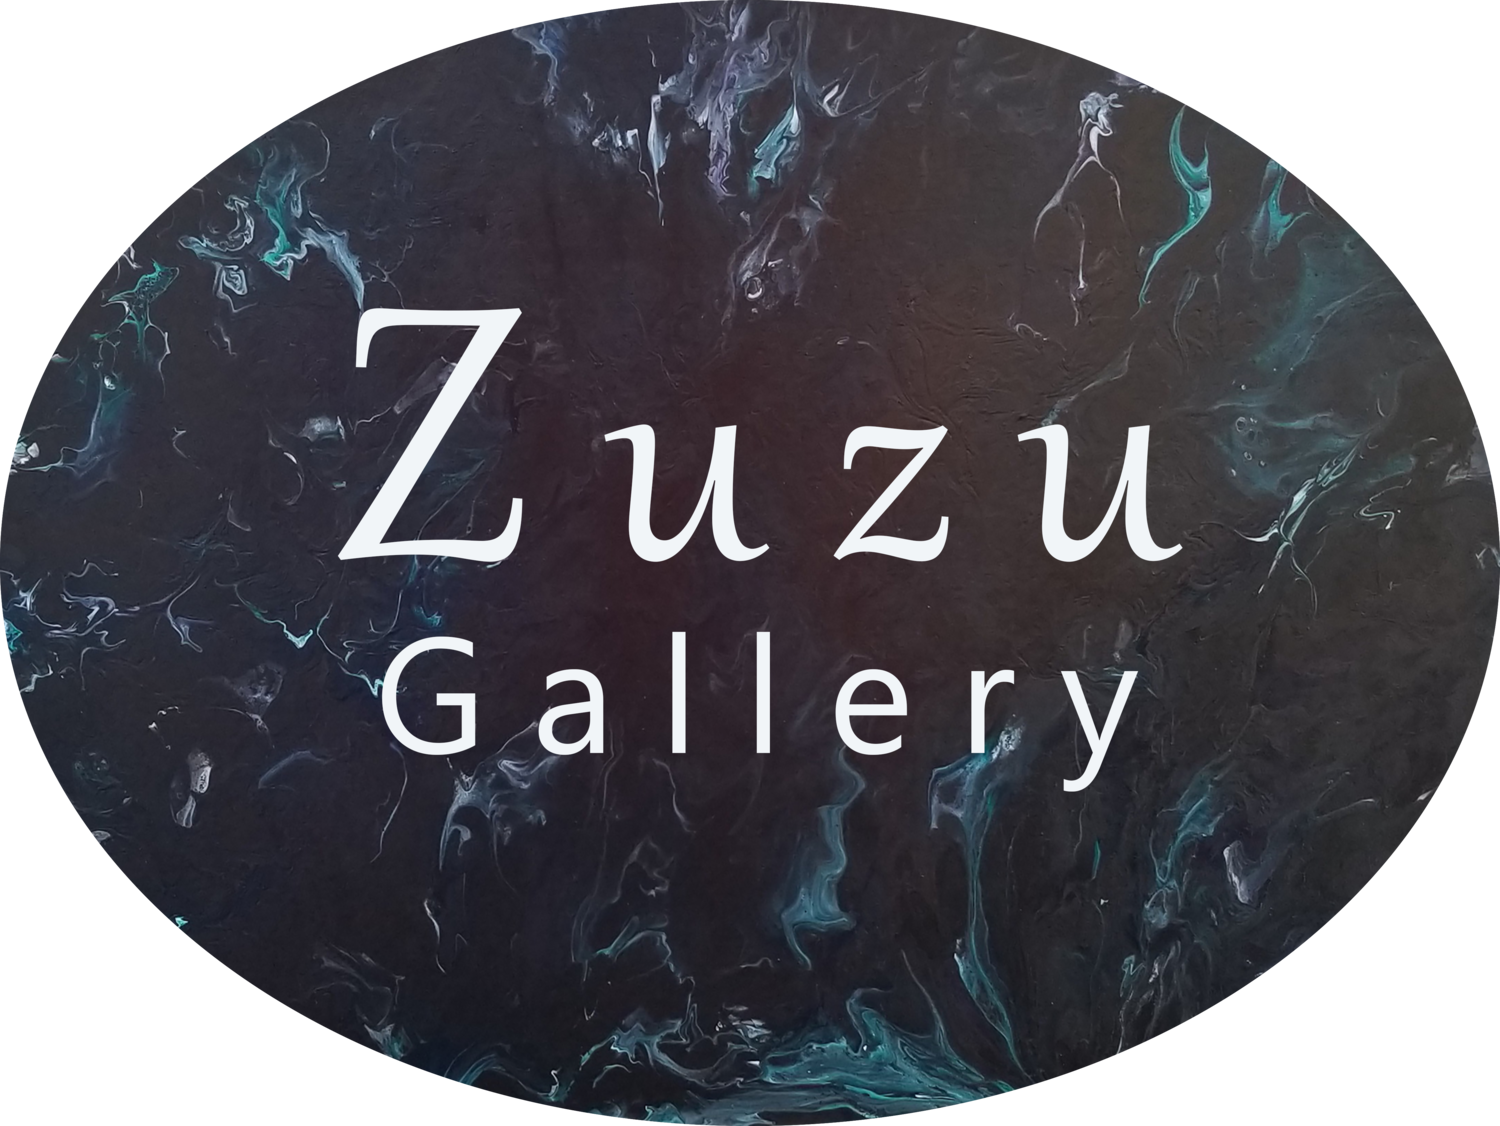 Zuzu Gallery